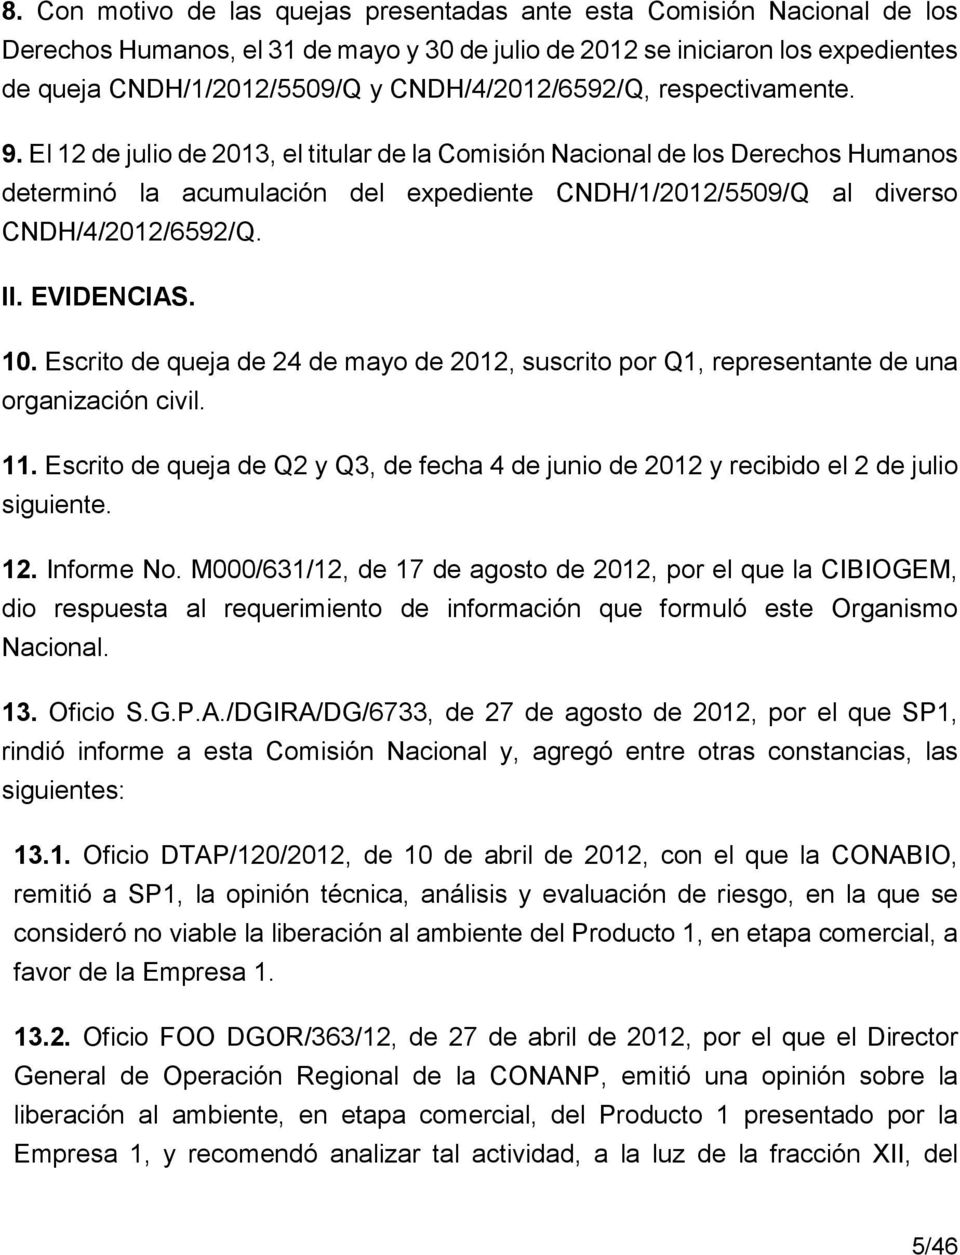 El 12 de julio de 2013, el titular de la Comisión Nacional de los Derechos Humanos determinó la acumulación del expediente CNDH/1/2012/5509/Q al diverso CNDH/4/2012/6592/Q. II. EVIDENCIAS. 10.